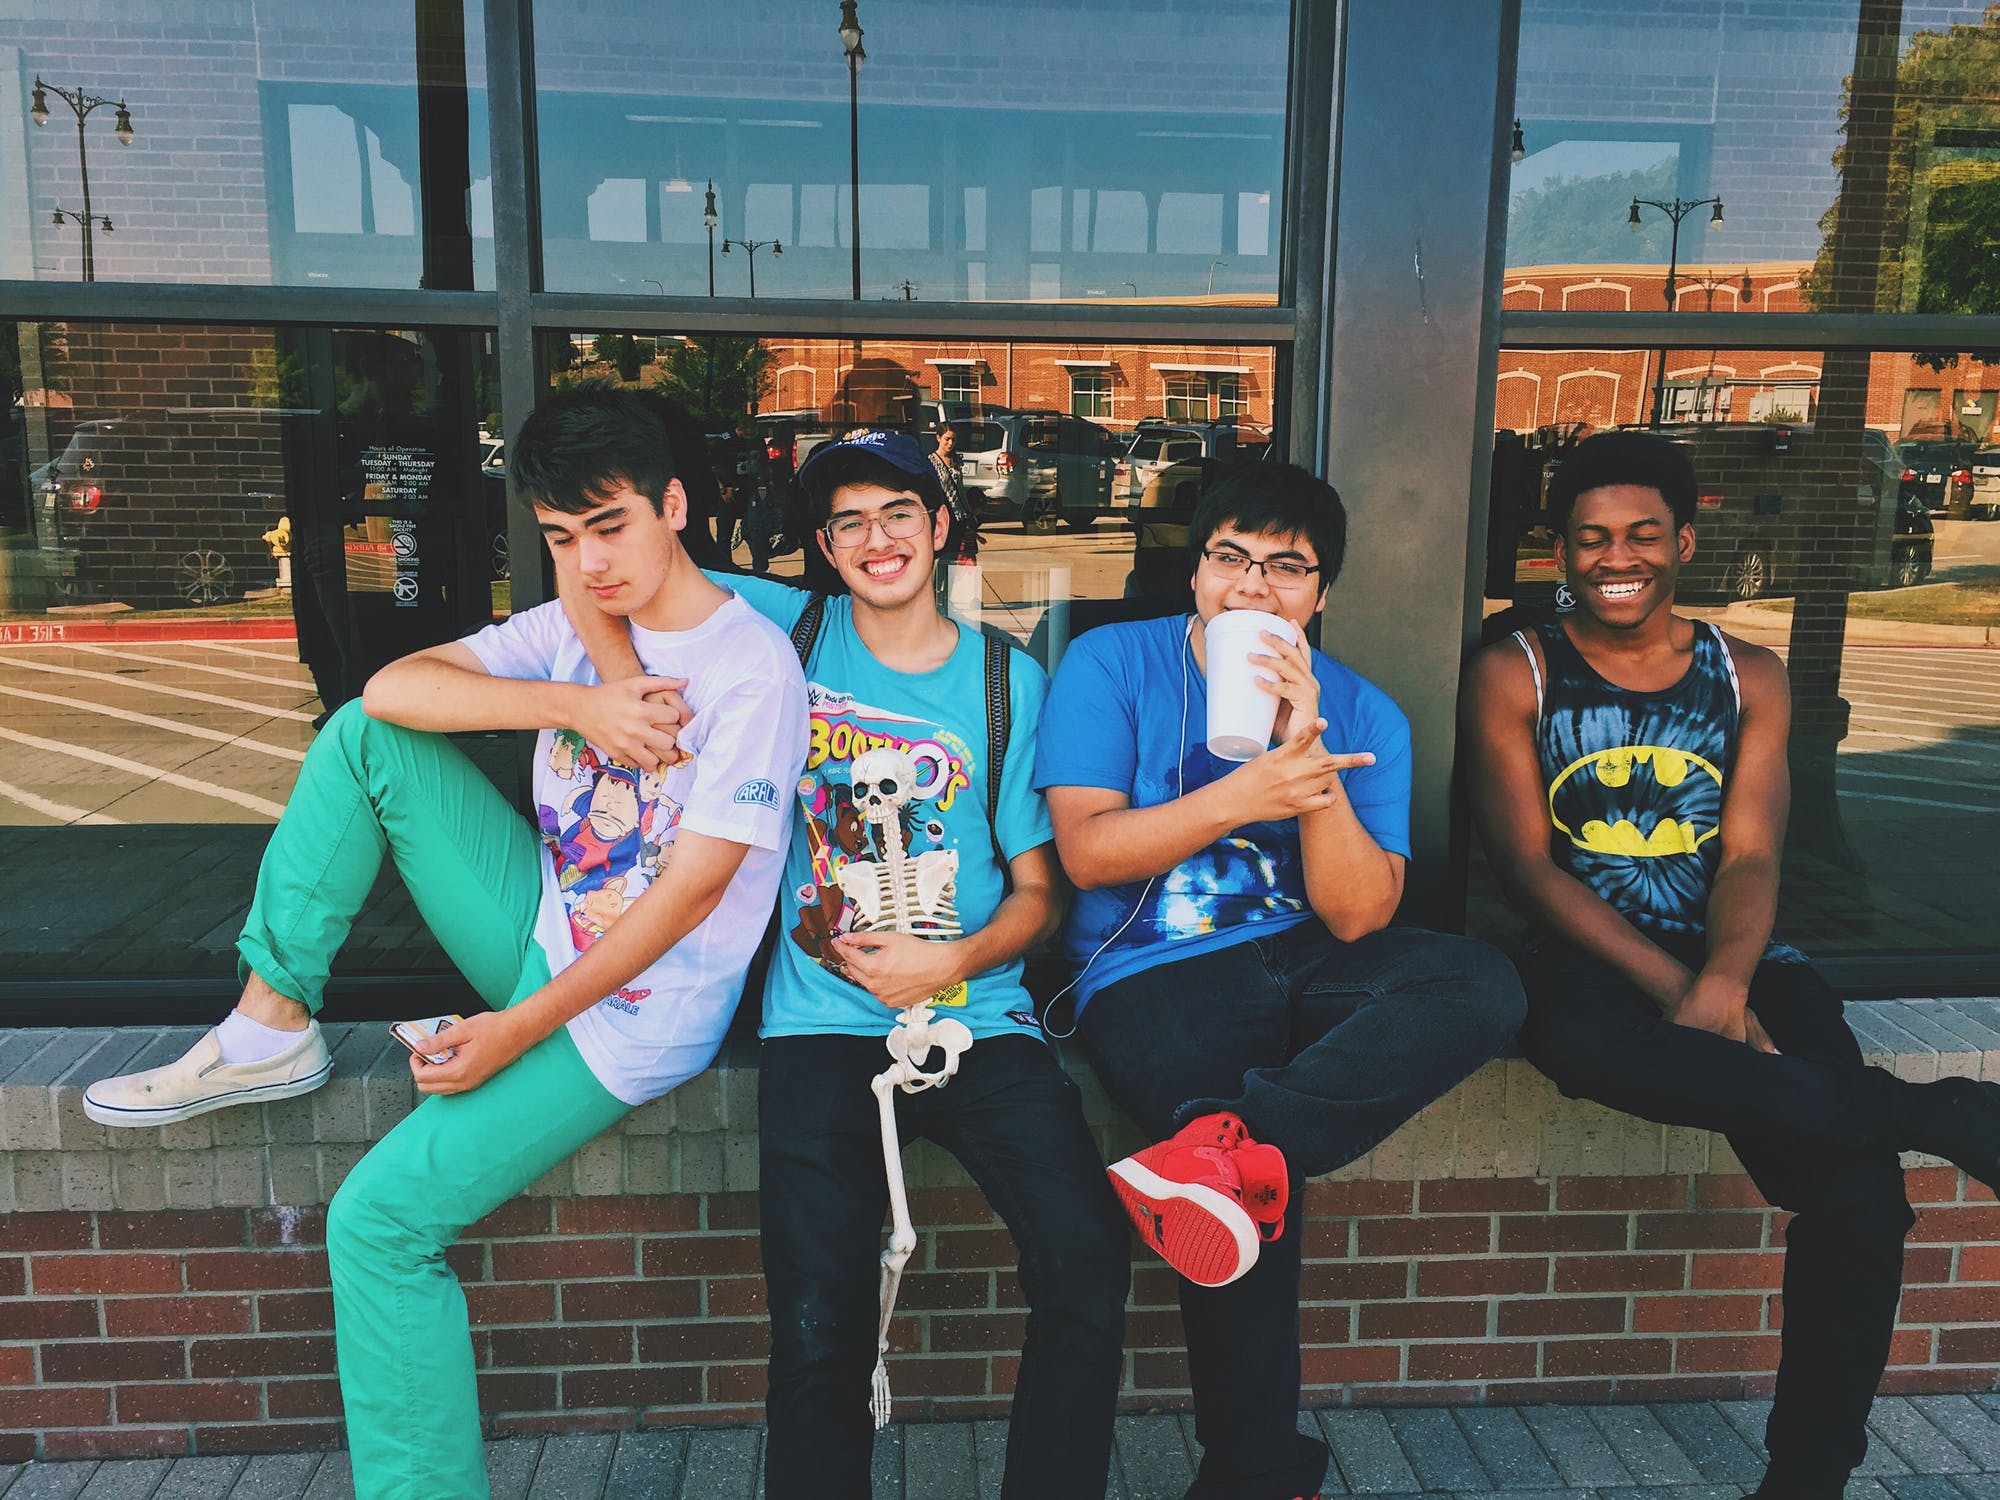 Group of teen boys | Source: Pexels